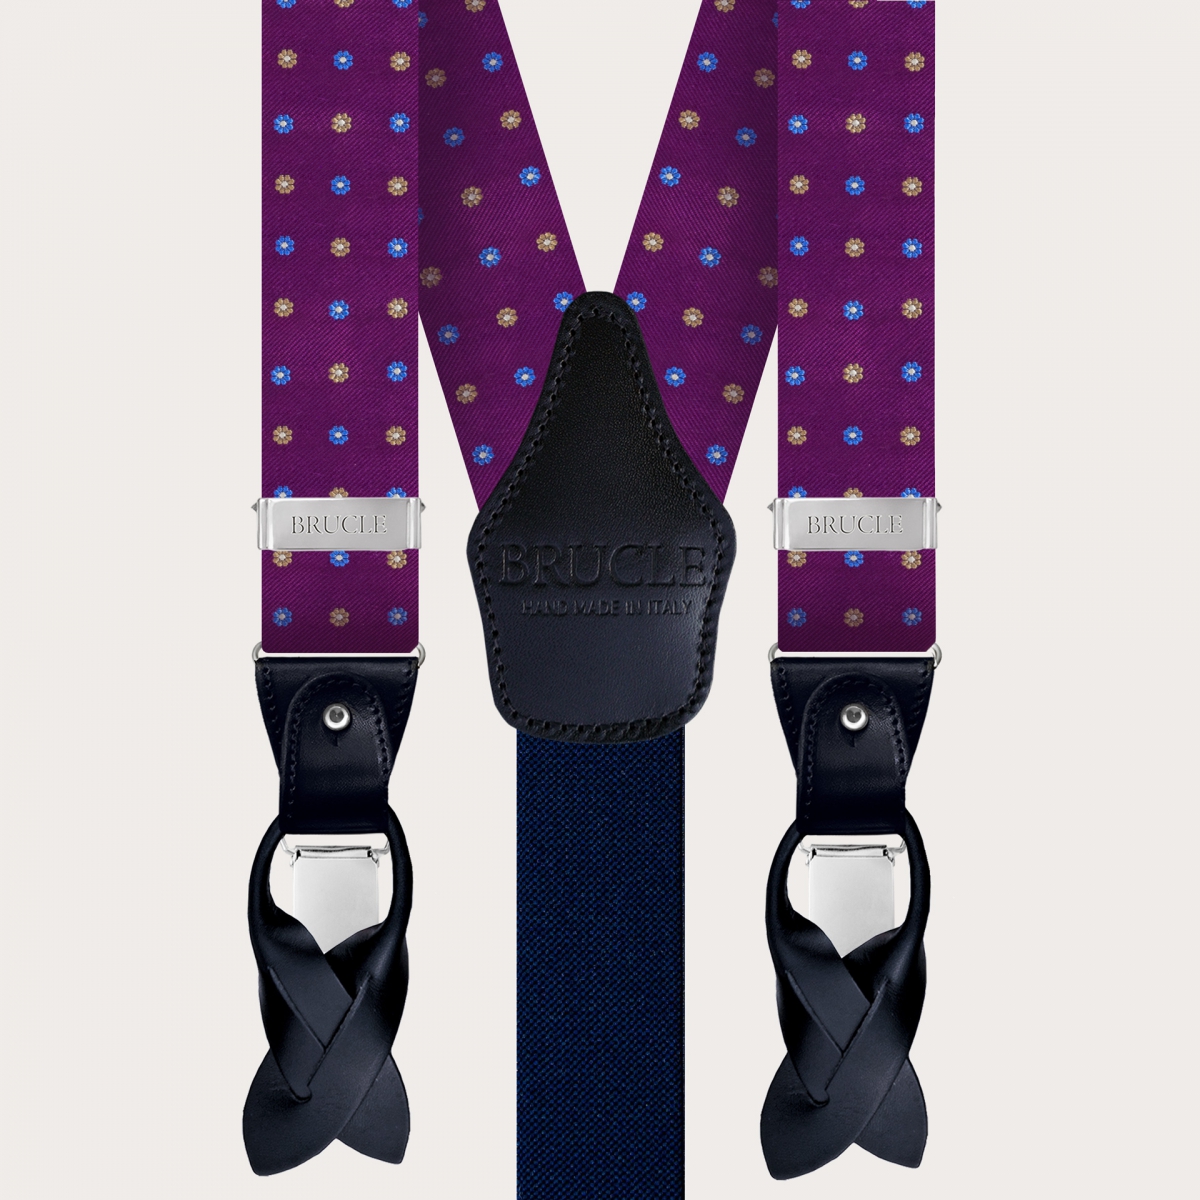 BRUCLE Bretelles et cravate coordonnées en soie violette fleurie